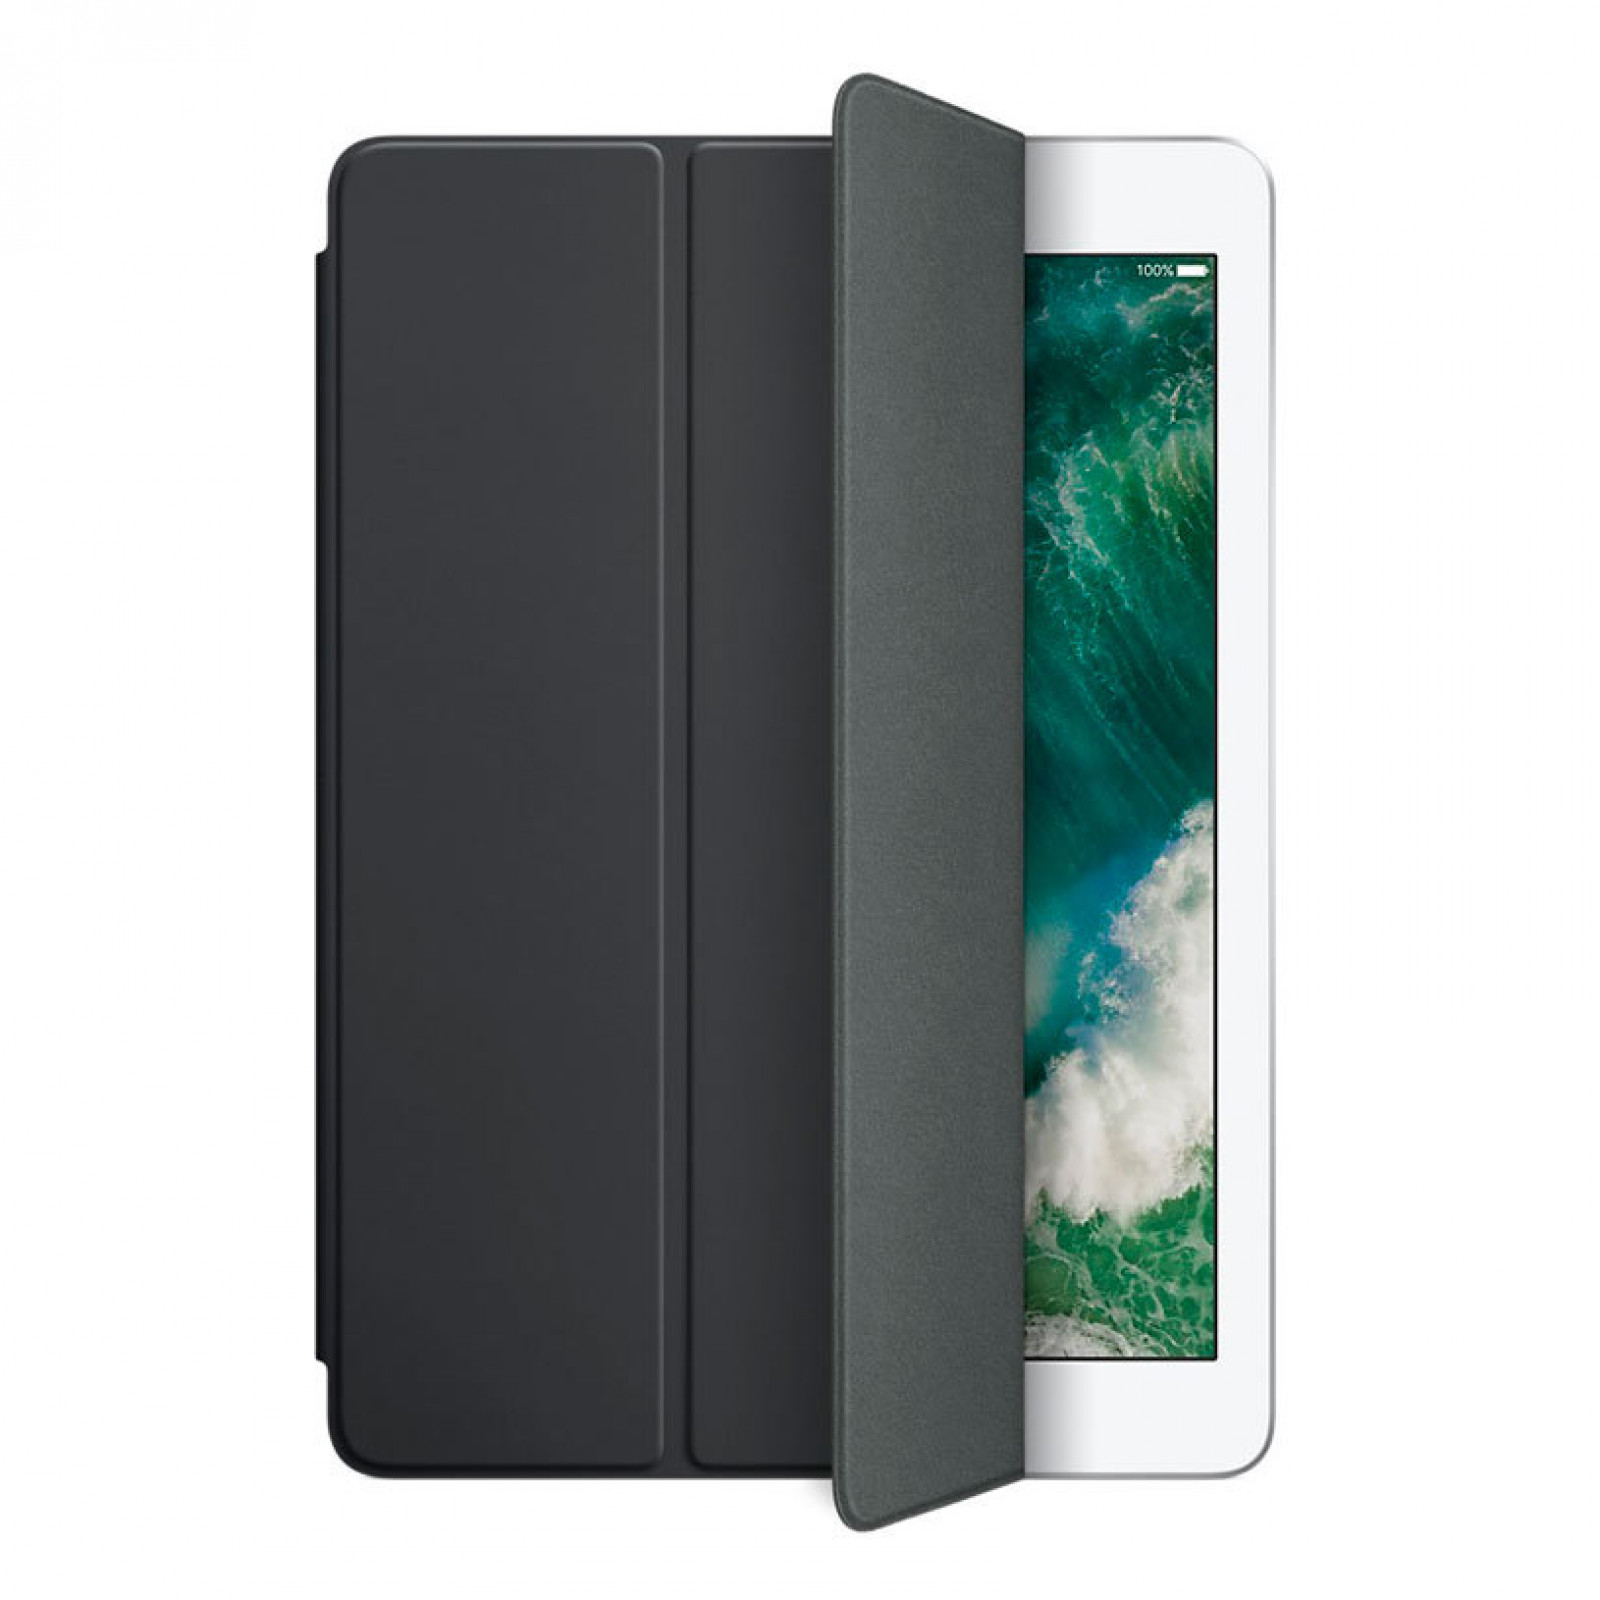 Оригинален калъф Smart cover за Apple iPad 9.7 - Charcoal Gray